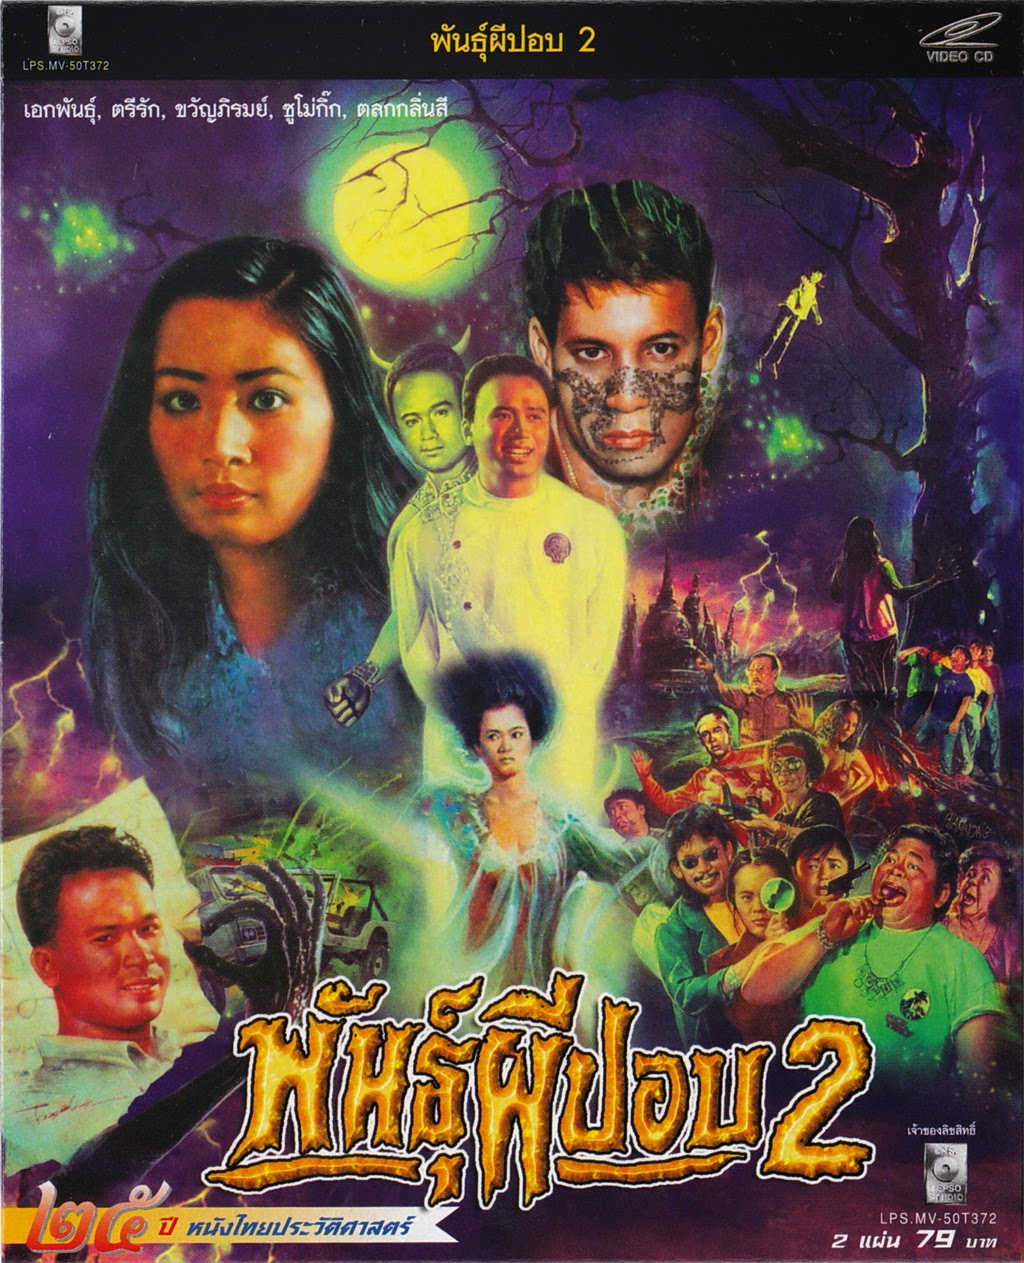 ดูหนังออนไลน์ฟรี Phan Phi Pop 2 (1989) พันธุ์ผีปอบ 2